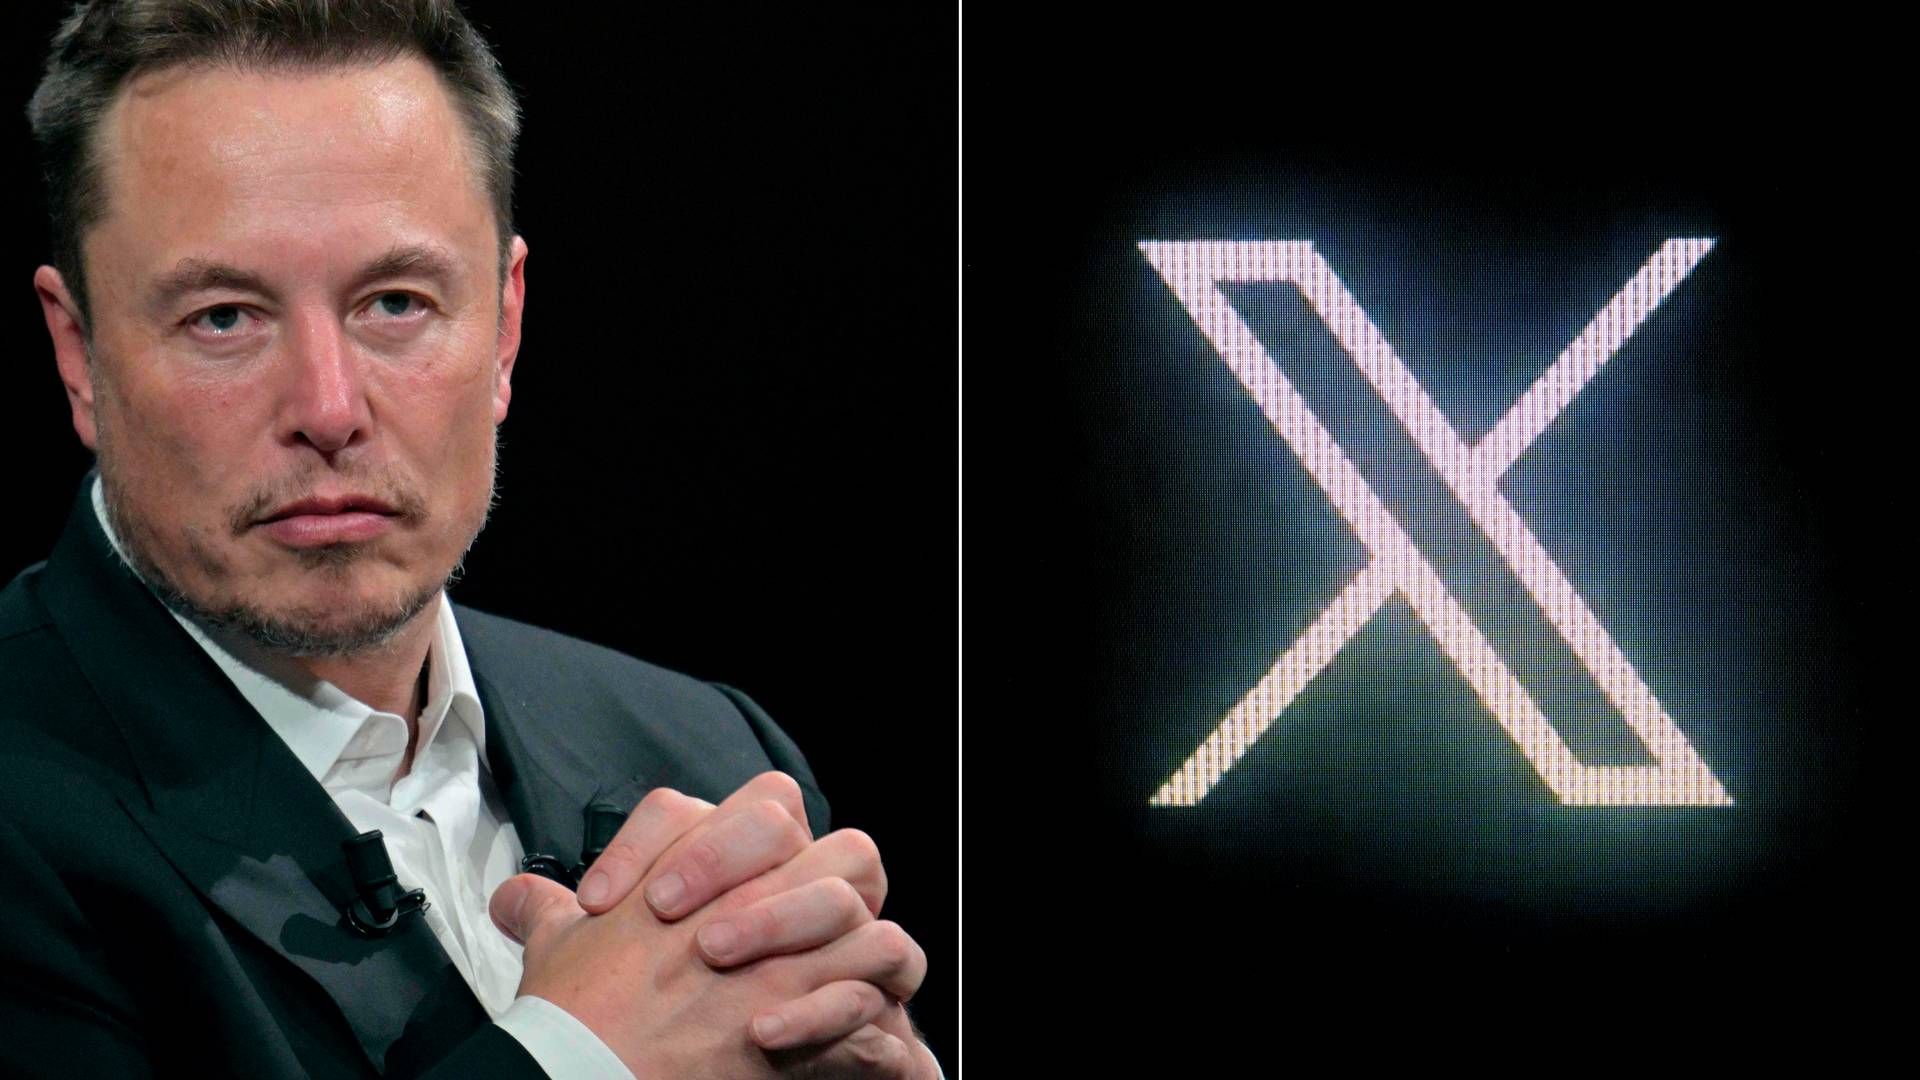 Som modsvar opfordrer Elon Musk i et opslag på X Breton til at fremlægge beviser på desinformation. (Arkivfoto) | Foto: Alain Jocard